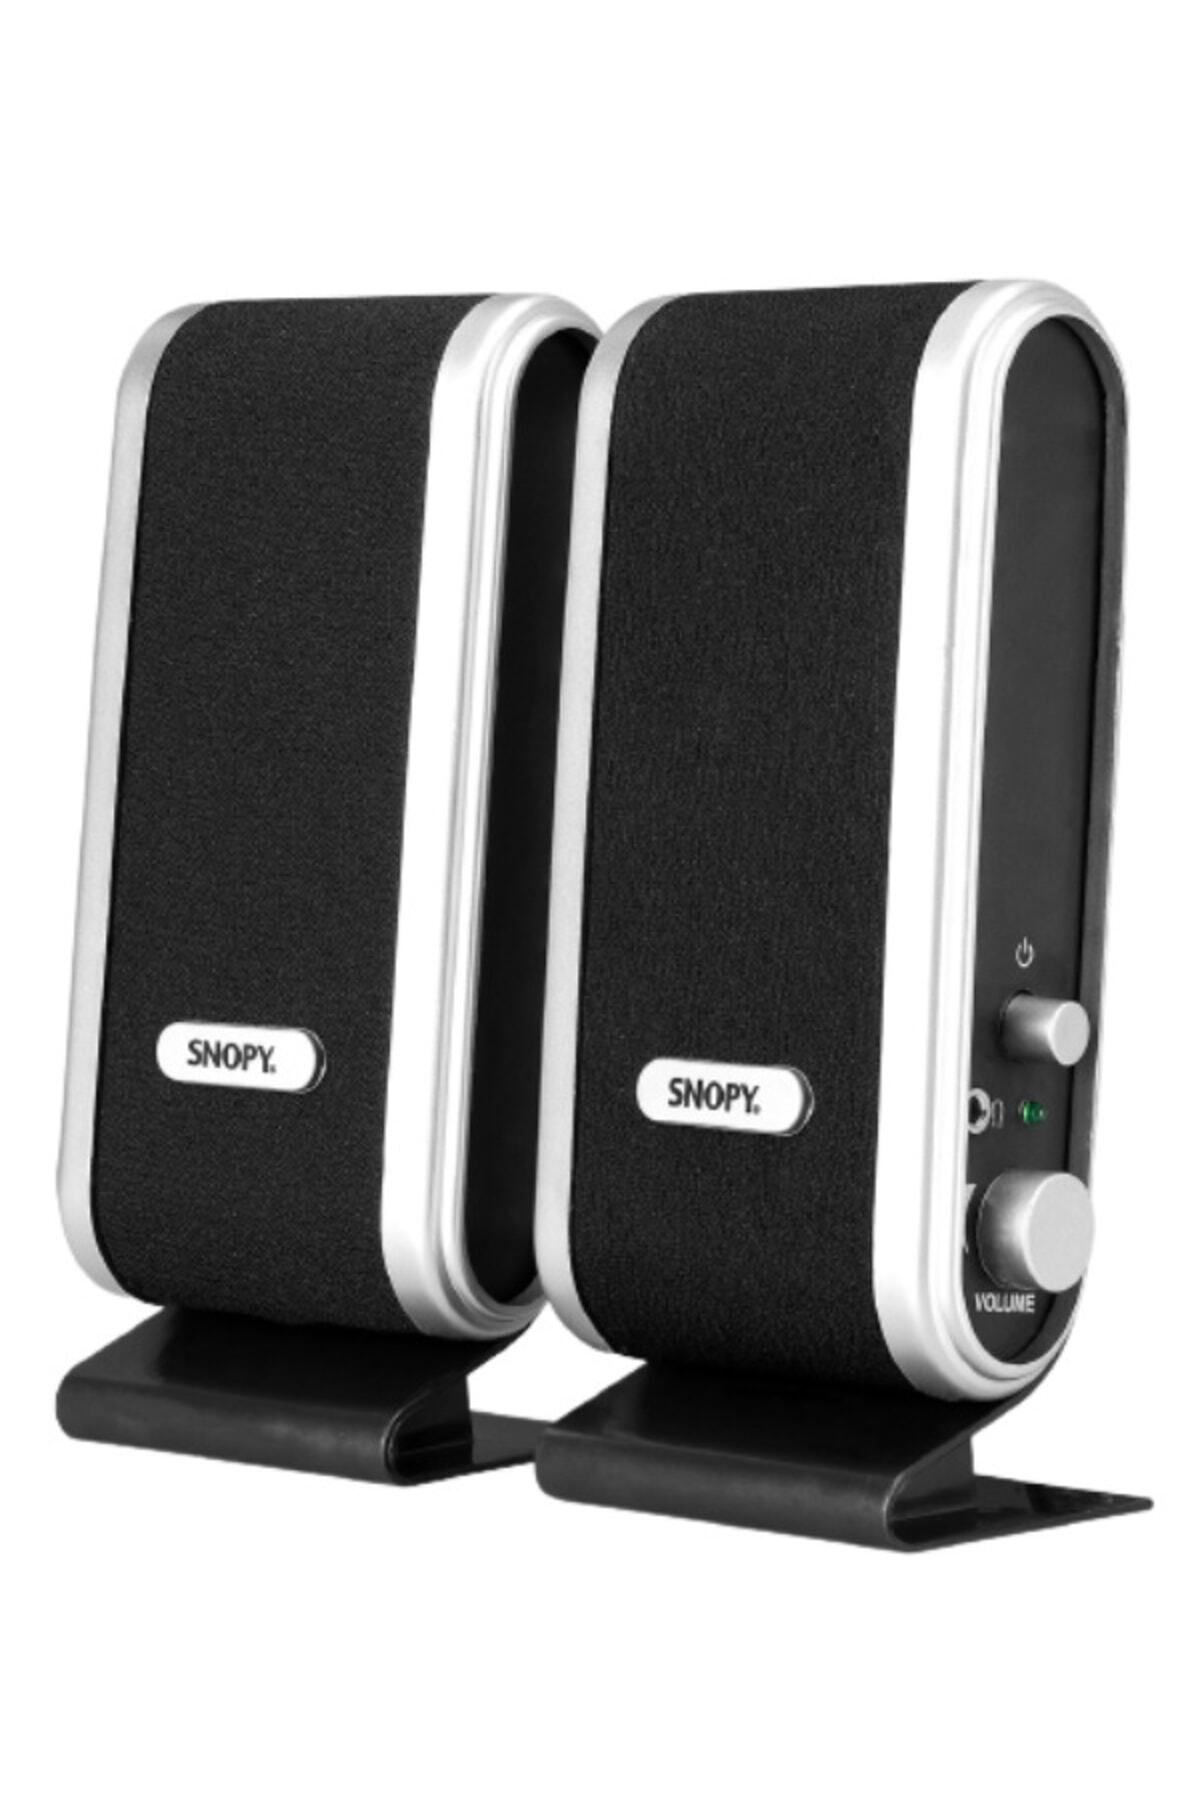 Snopy Siyah/gümüş Lcd Ince Tasarım Usb Multimedia Pc Speaker Bilgisayar ,leptop Hoparlör